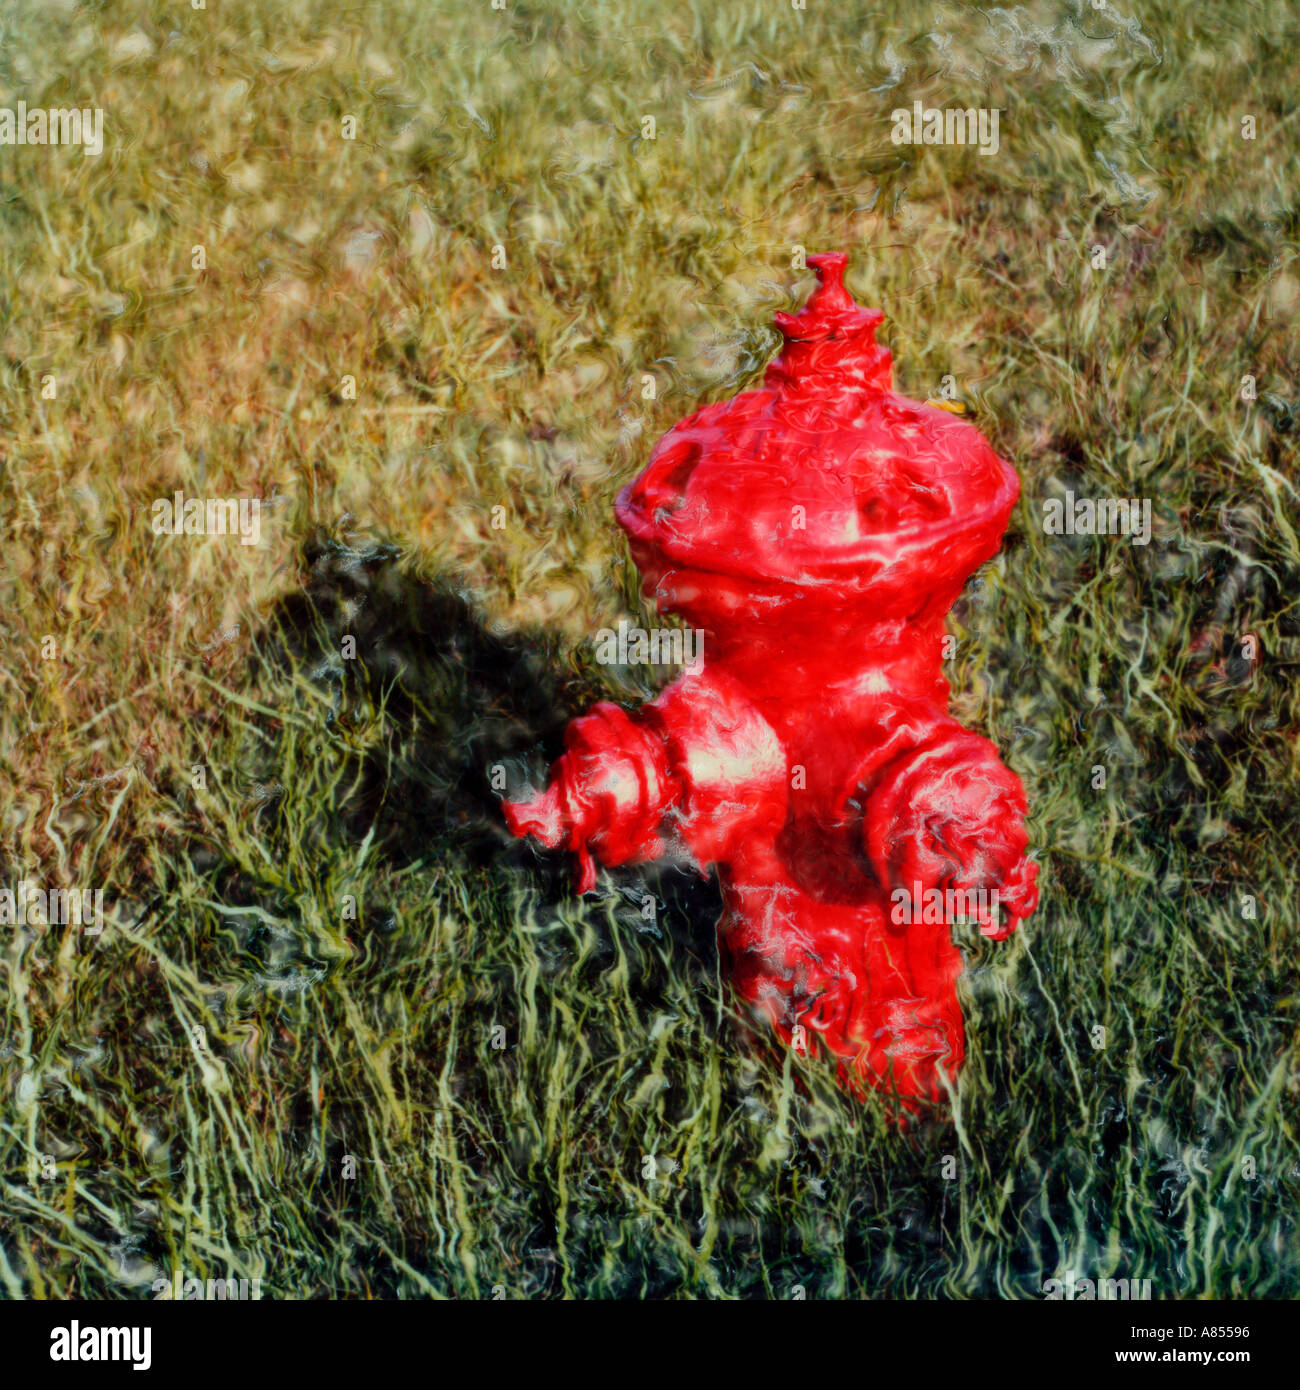 Hidrante roja en hierba Foto de stock